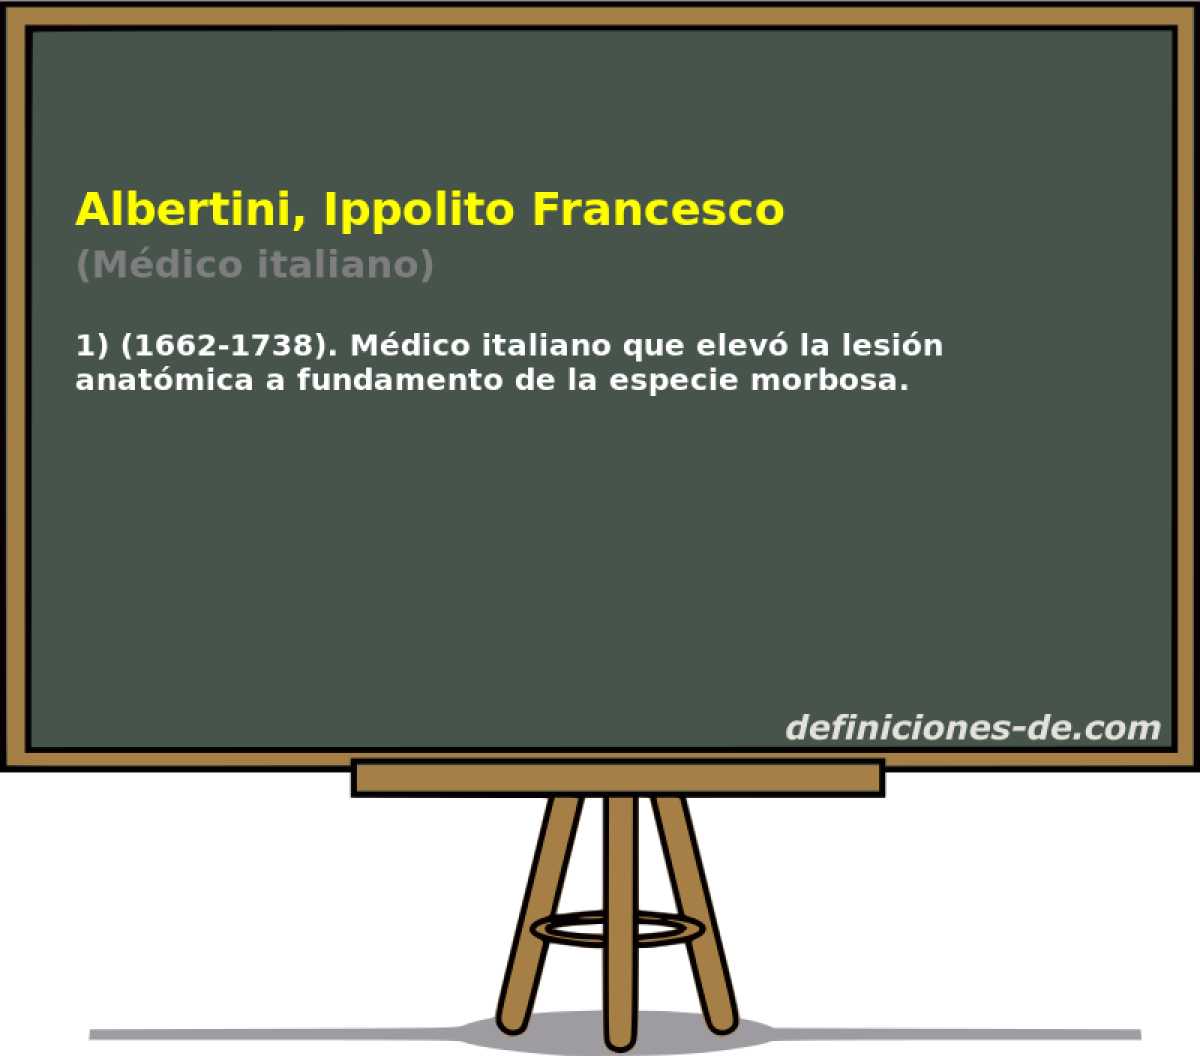 Albertini, Ippolito Francesco (Mdico italiano)